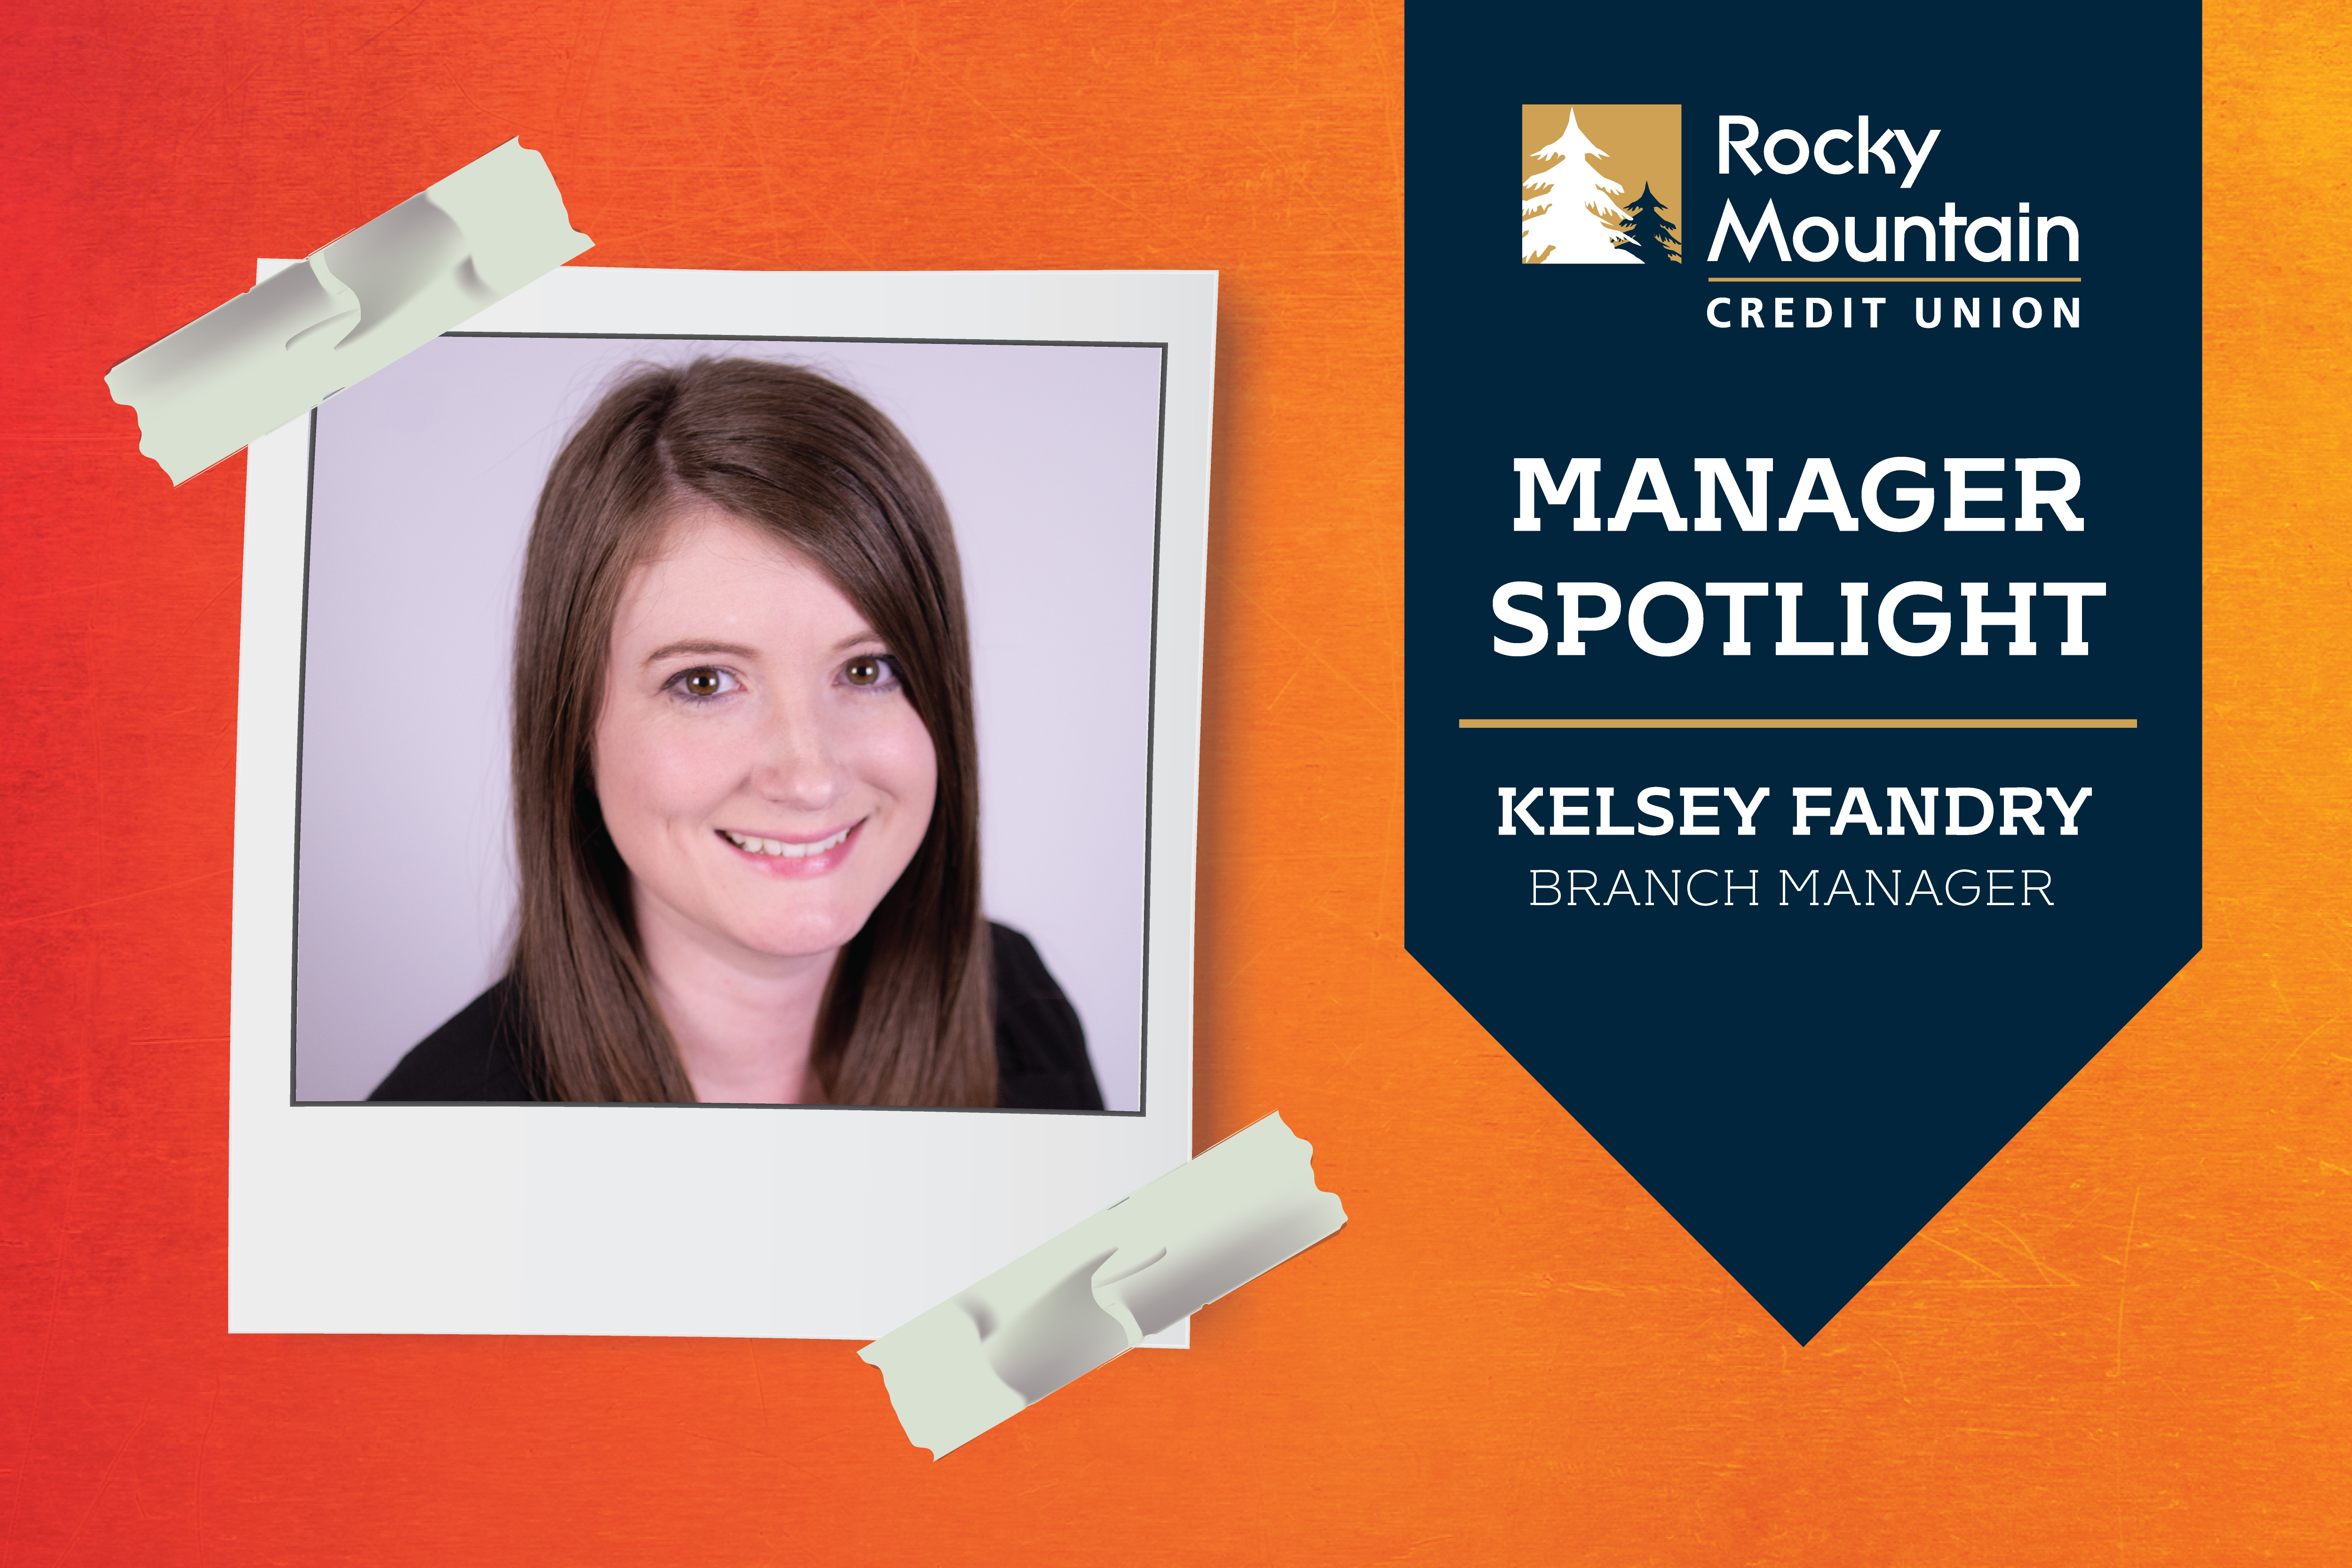 Manager spotlight on kelsey fandry